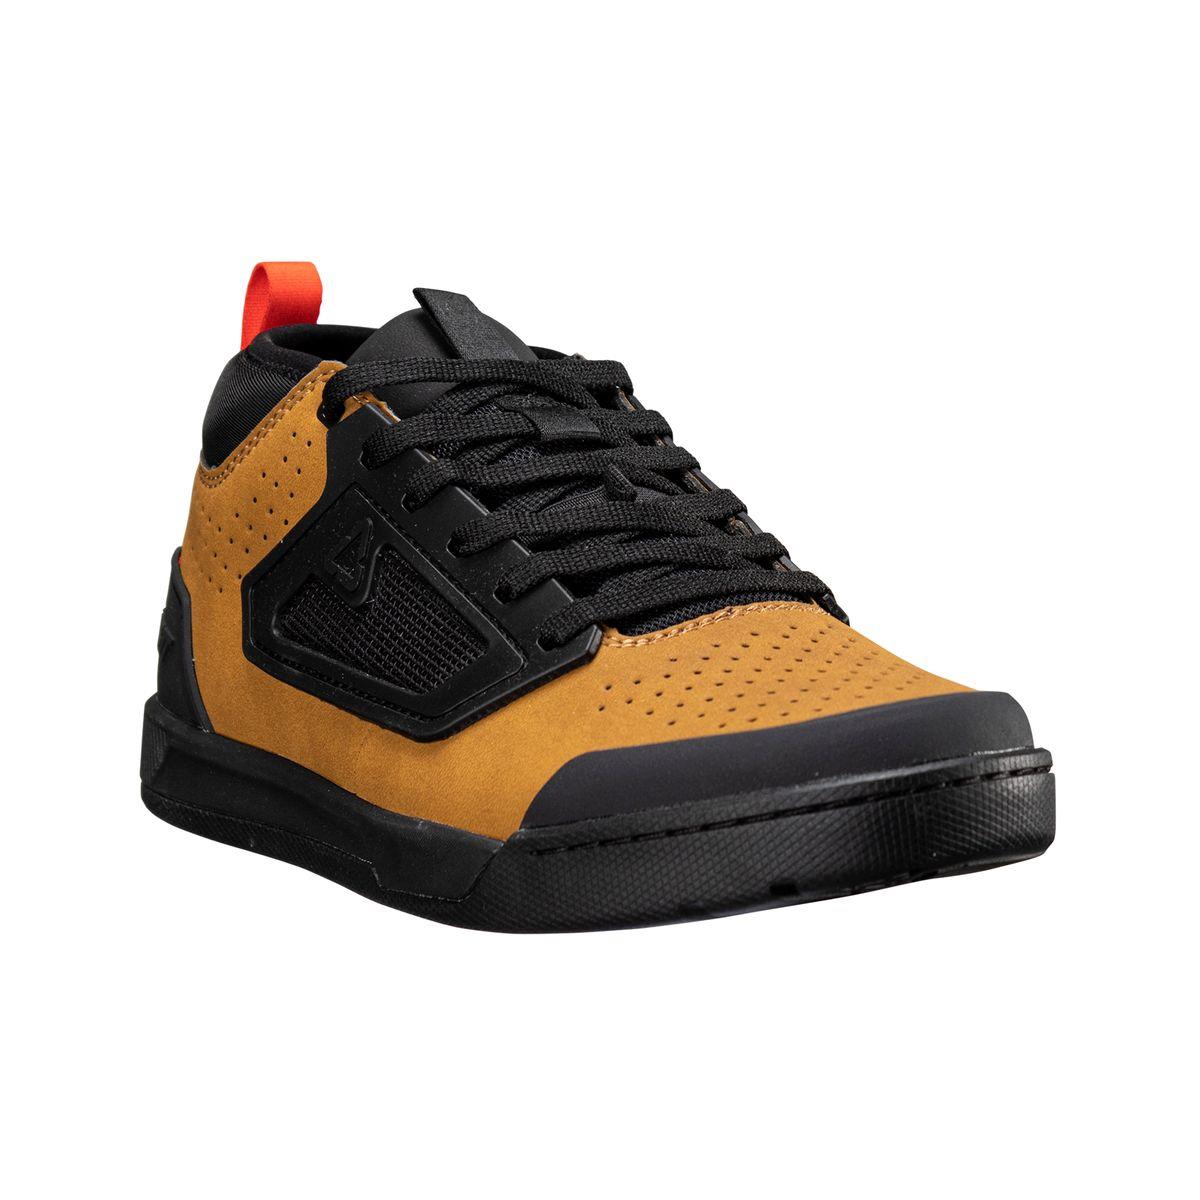 Chaussures VTT Flat 3.0 marron/noir taille 38,5